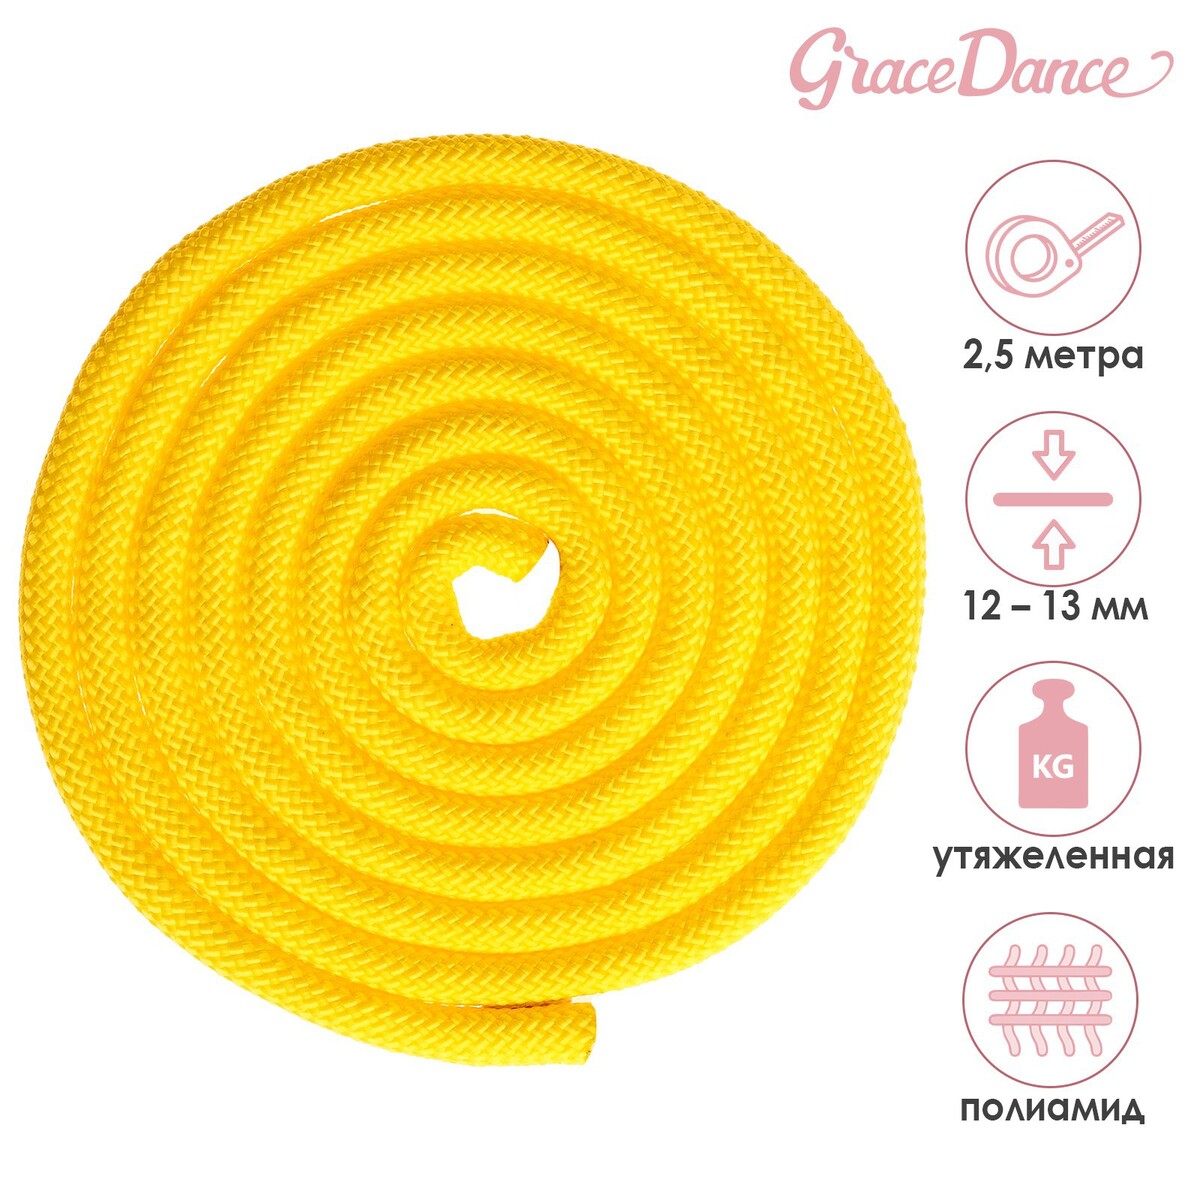 Скакалка для художественной гимнастики утяжеленная grace dance, 2,5 м, цвет желтый скакалка гимнастическая grace dance 3 м неоновый желтый